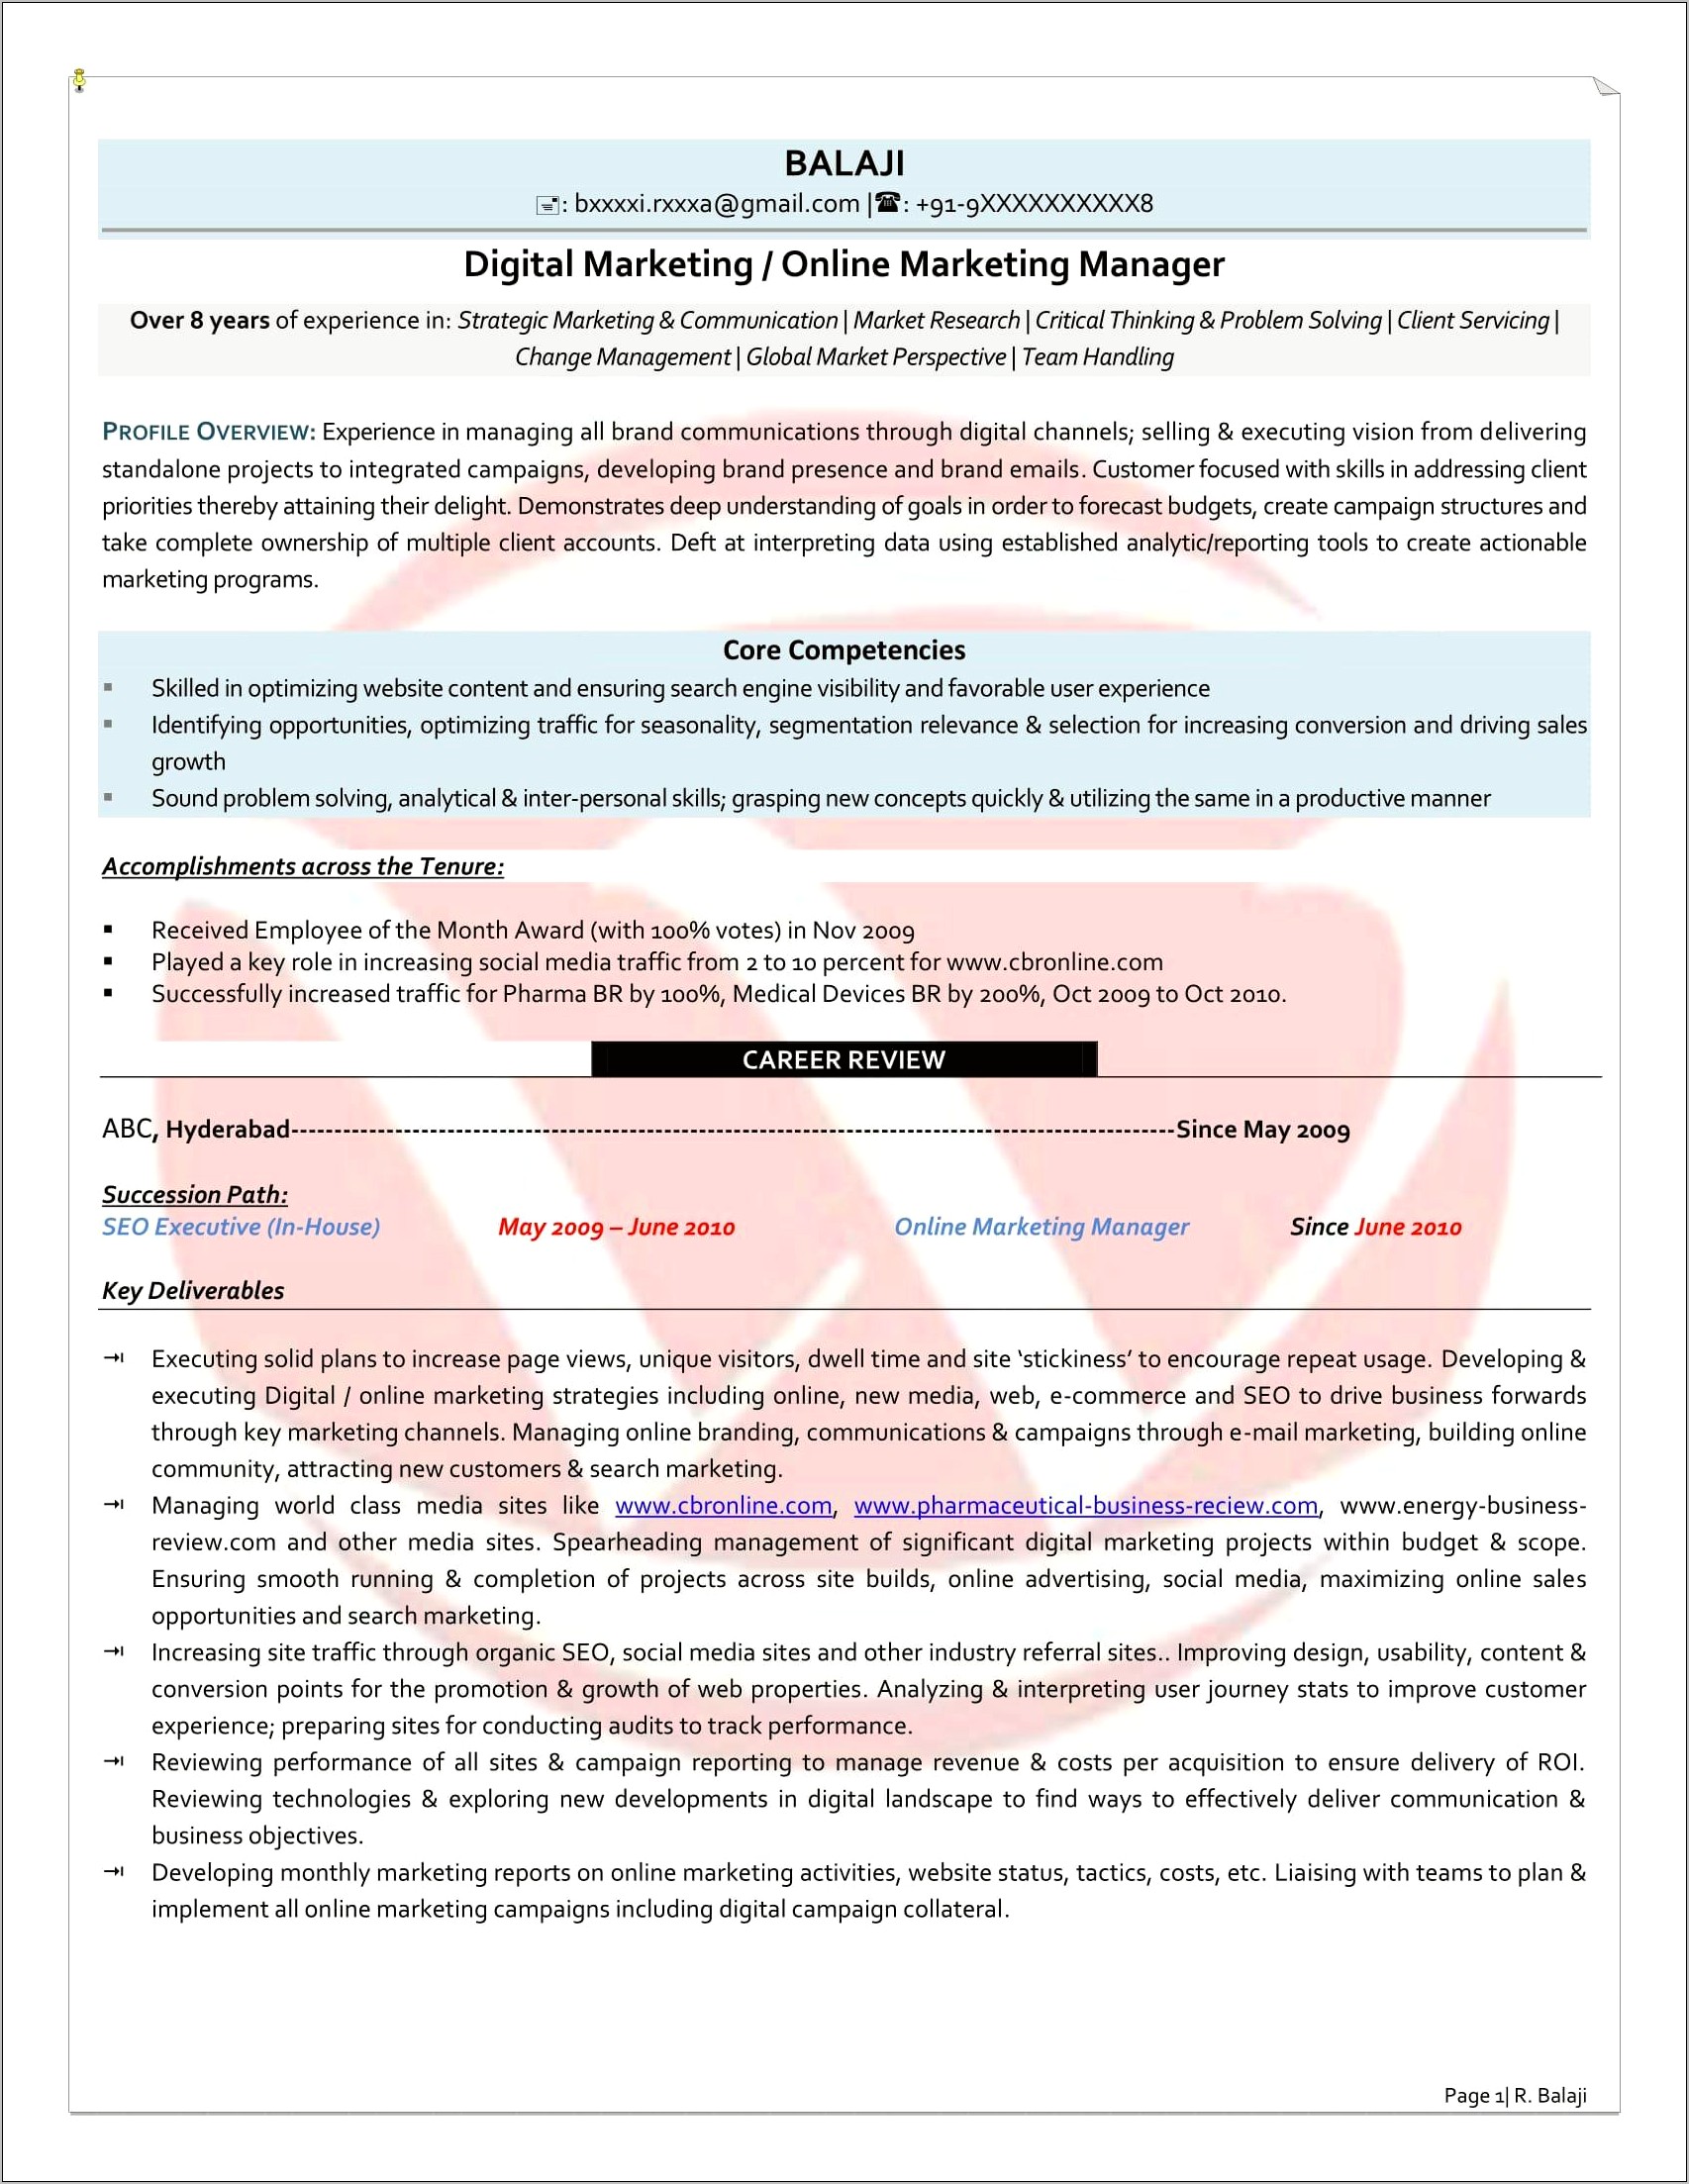 Resume Format For Digital Marketing Manager